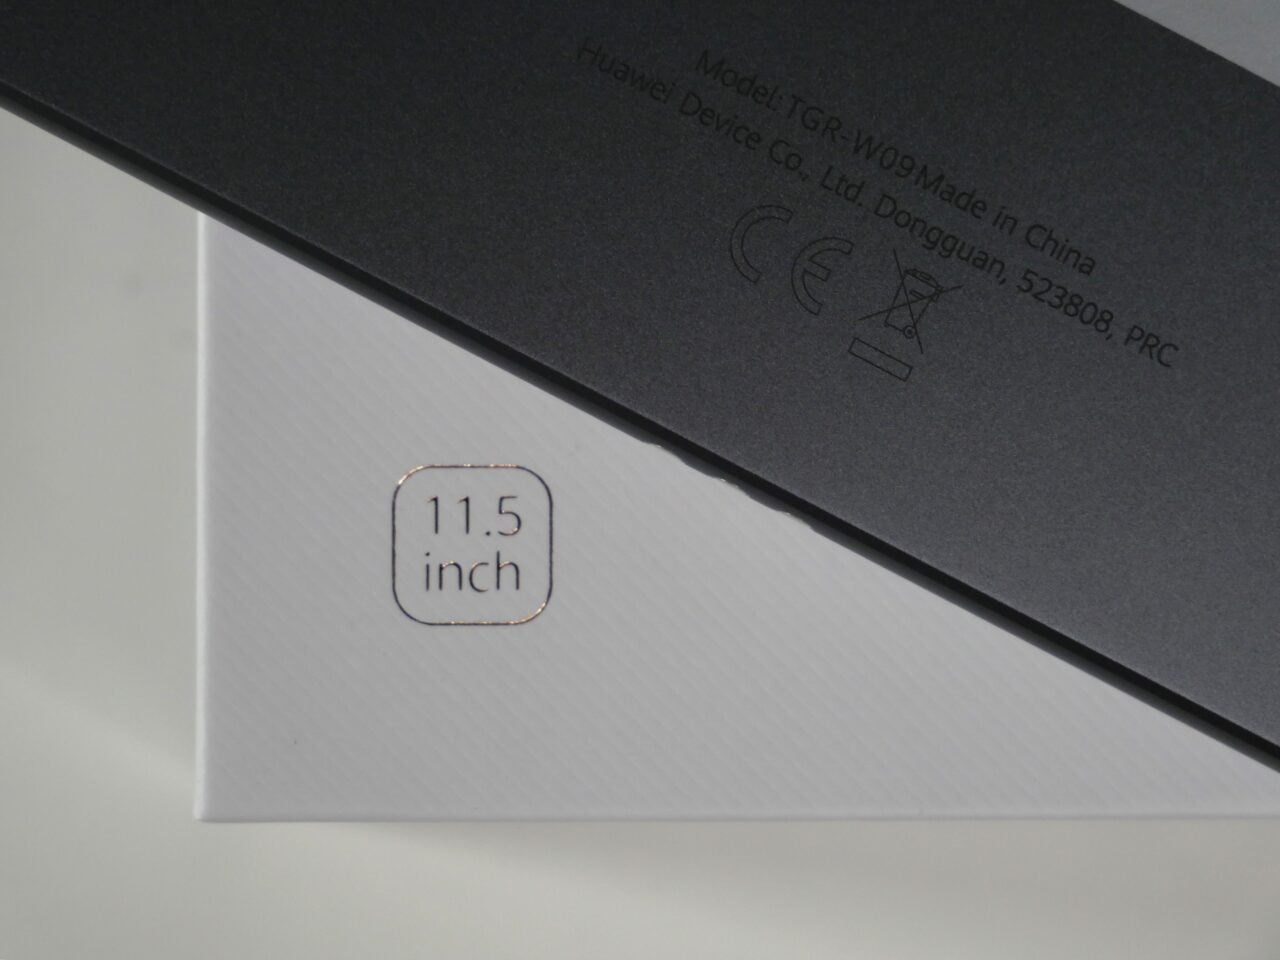 Białe pudełko z napisem "11.5 inch" oraz fragment urządzenia z napisem "Made in China".